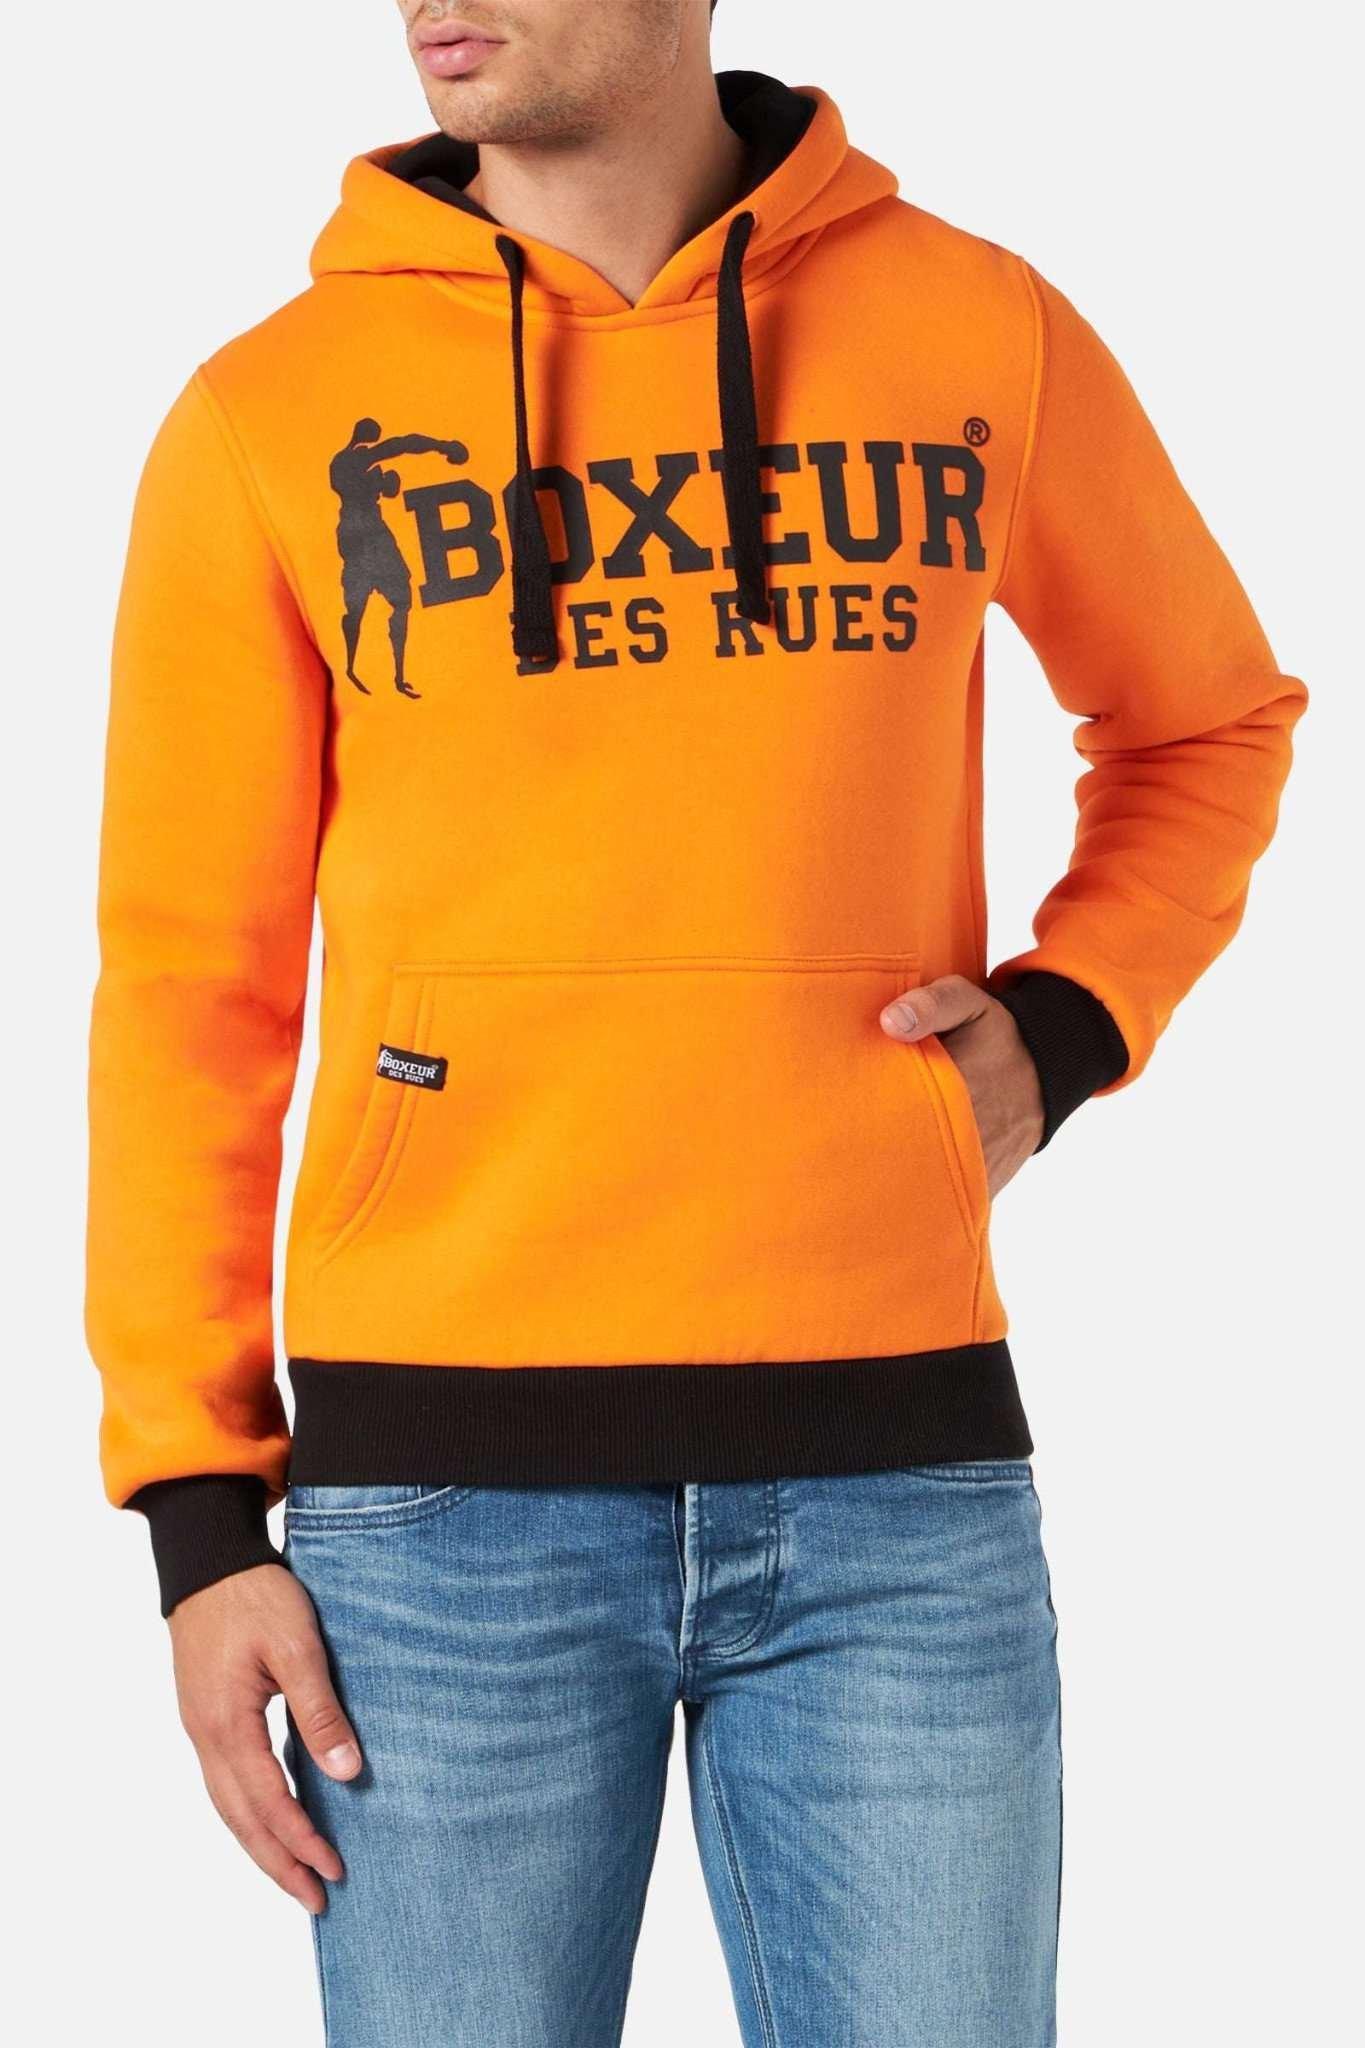 Sweatshirts Man Hoodie Sweatshirt Herren Orange M von BOXEUR DES RUES